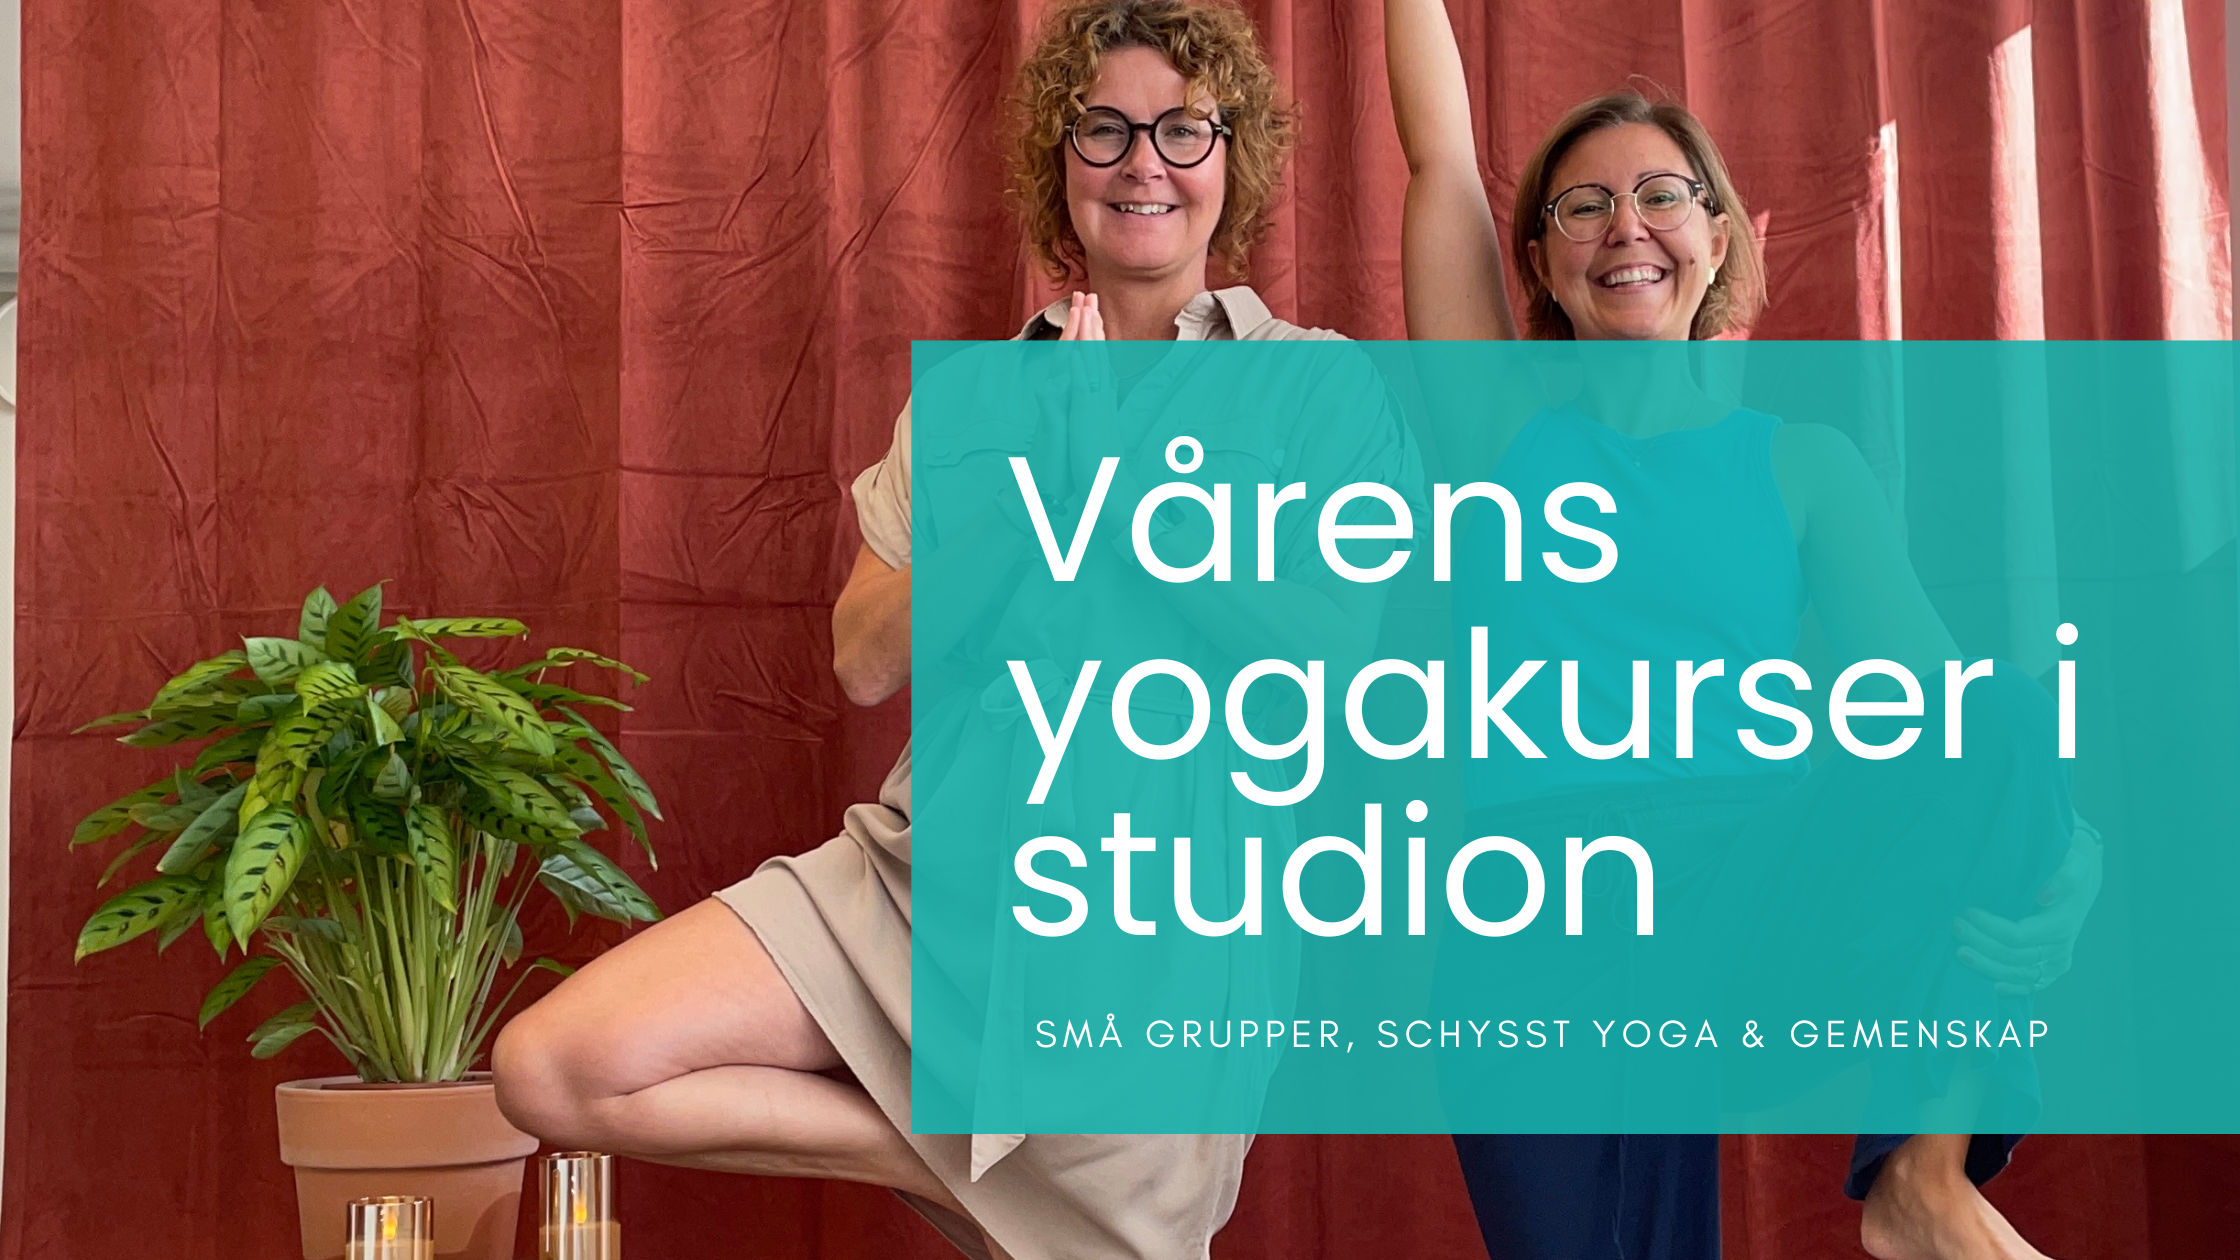 Bild på Pia och Ann i yogastudion med texten "vårens yogakurser i studion".